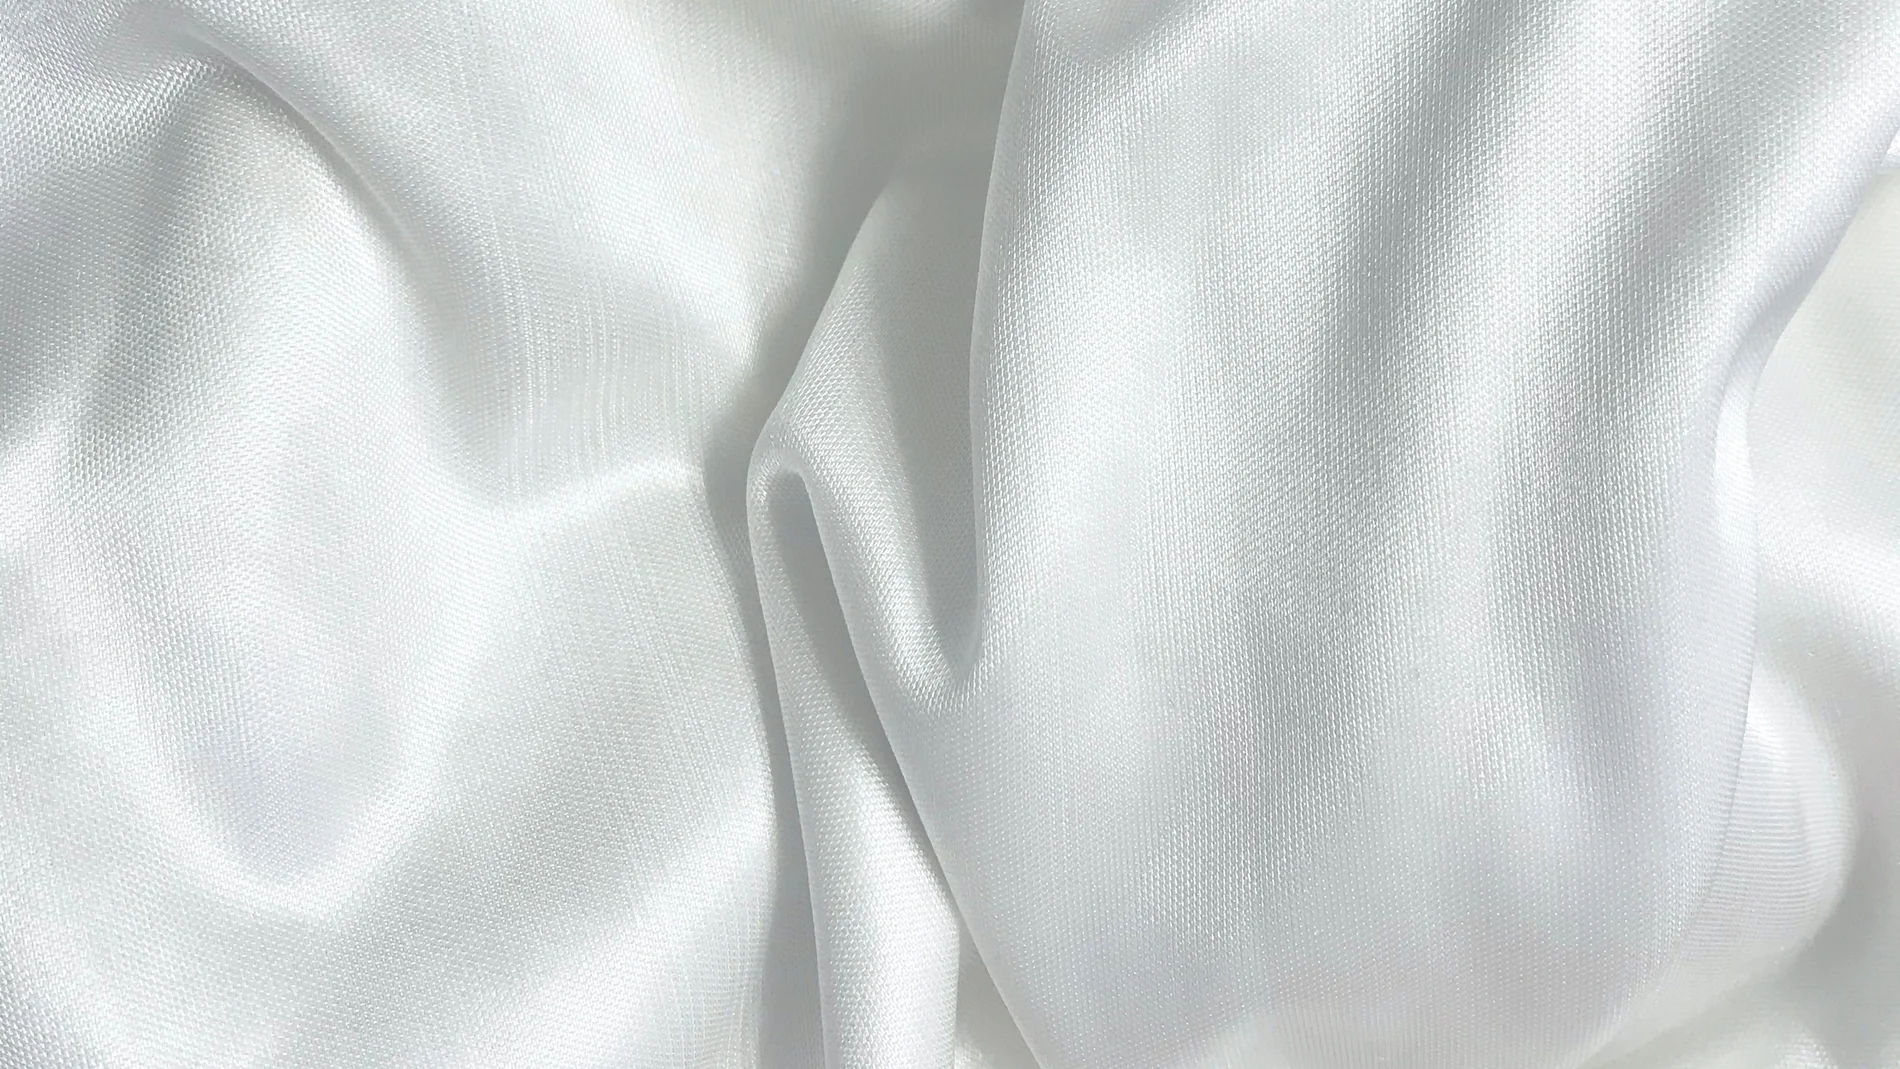 ¿Cómo lavar la ropa blanca muy sucia? Trucos para que quede impecable